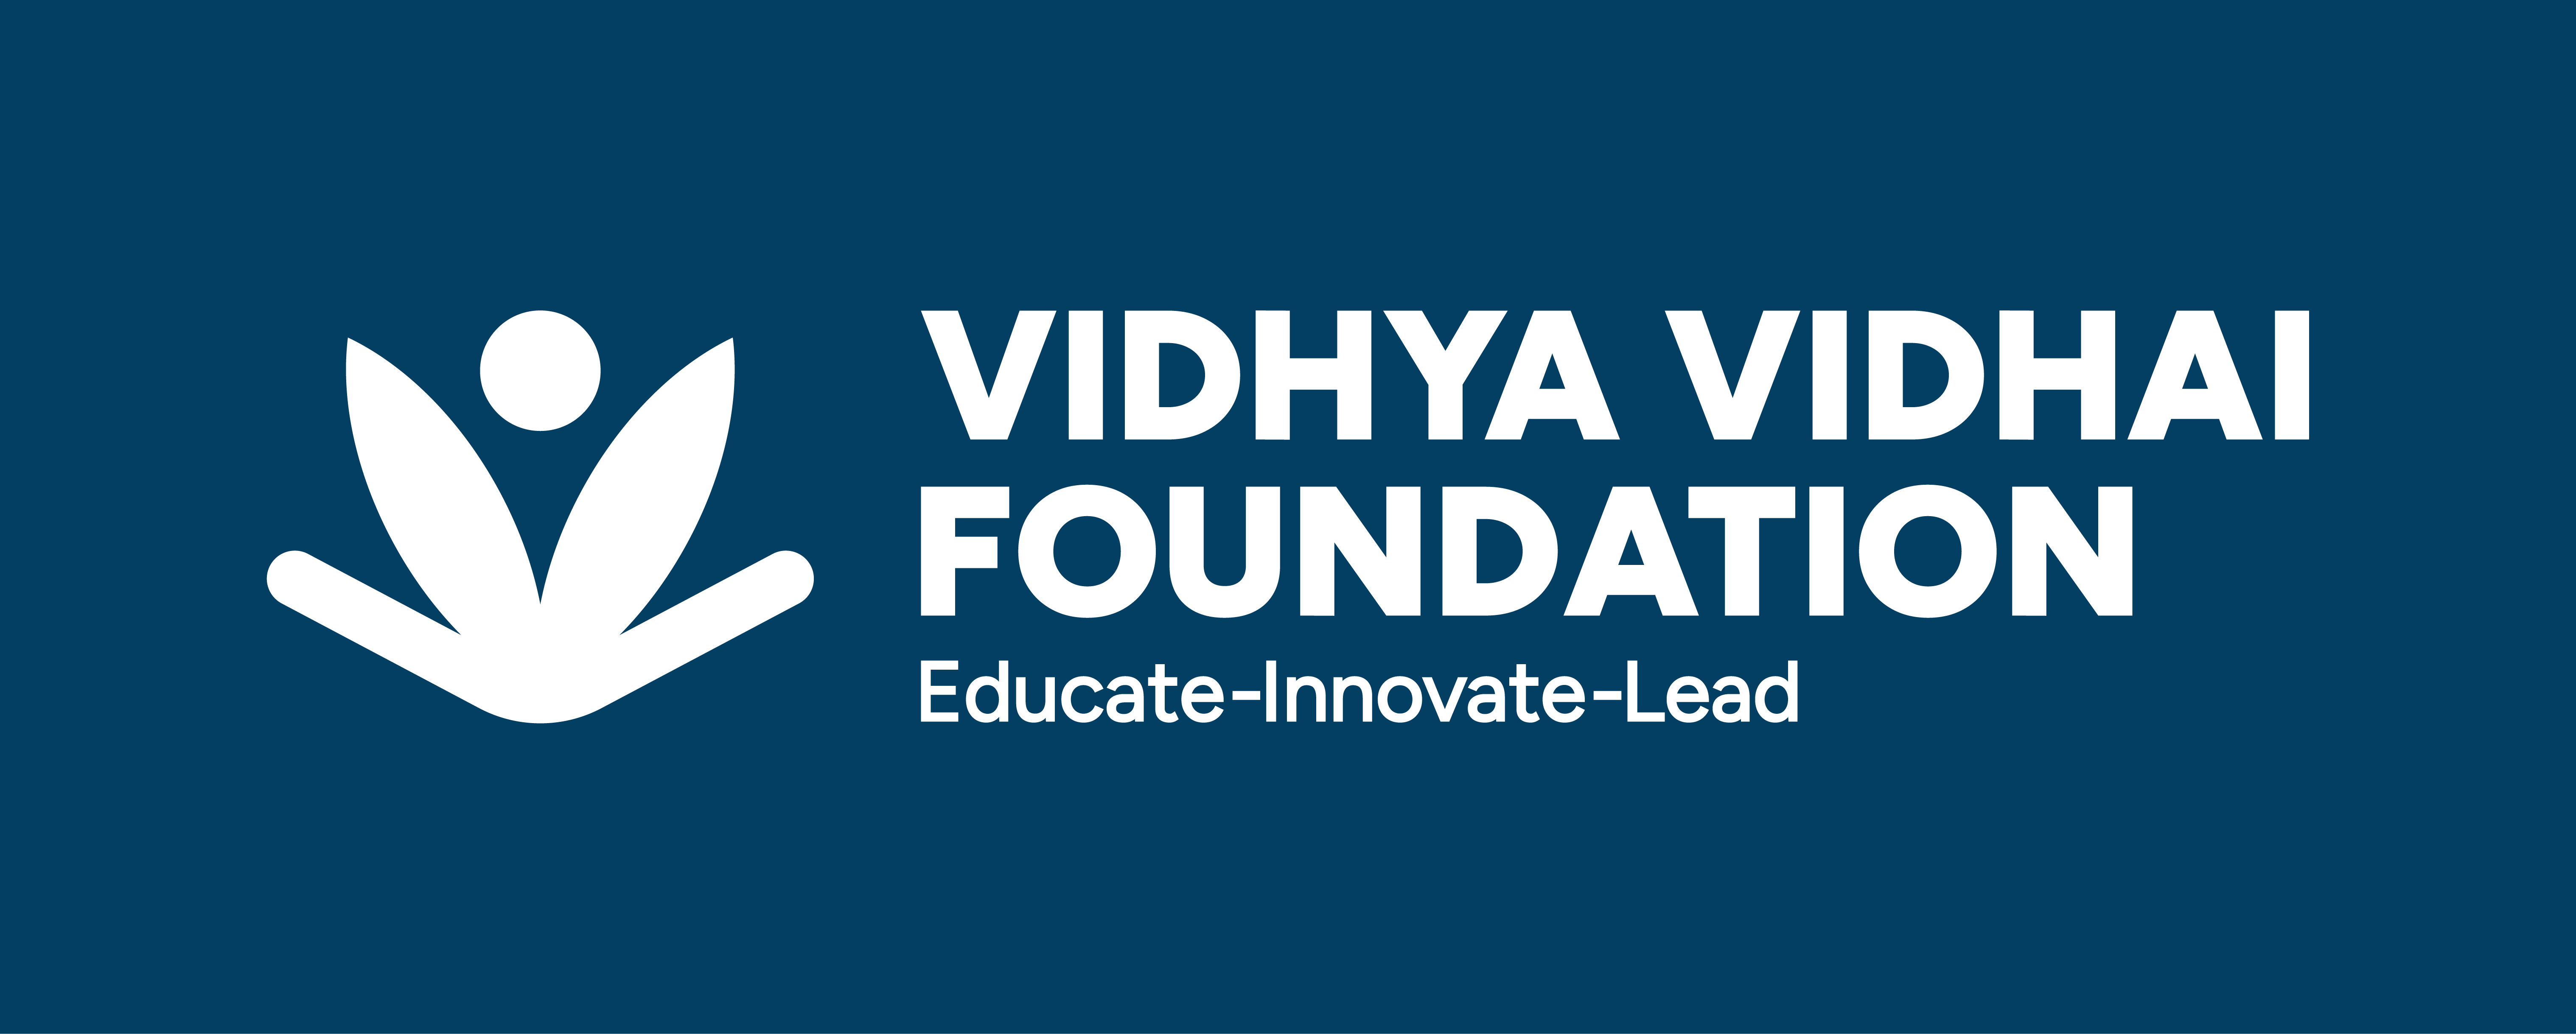 Vidhya Vidhai Foundation  